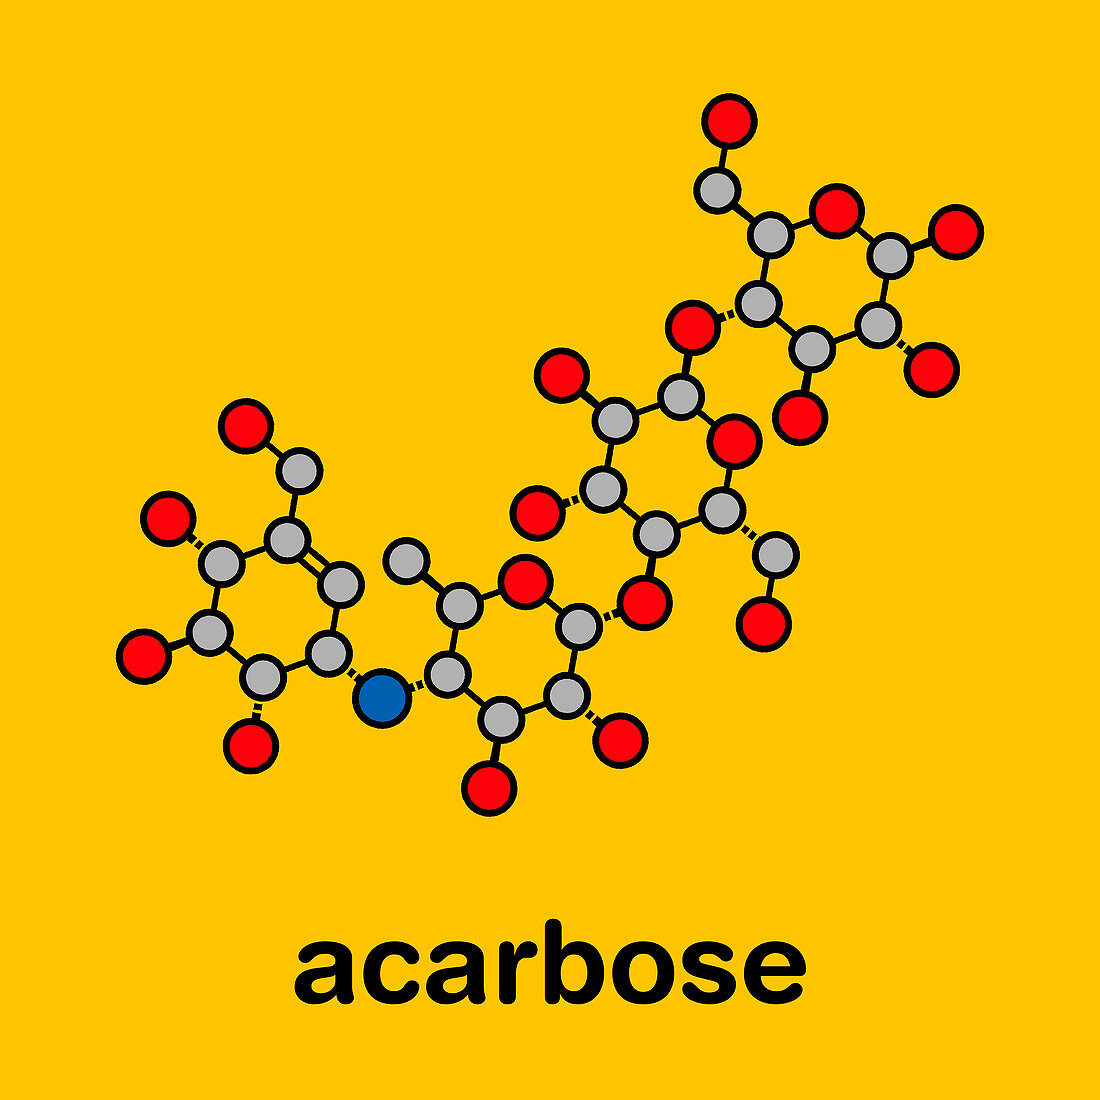 Acarbose diabetes drug, molecular model